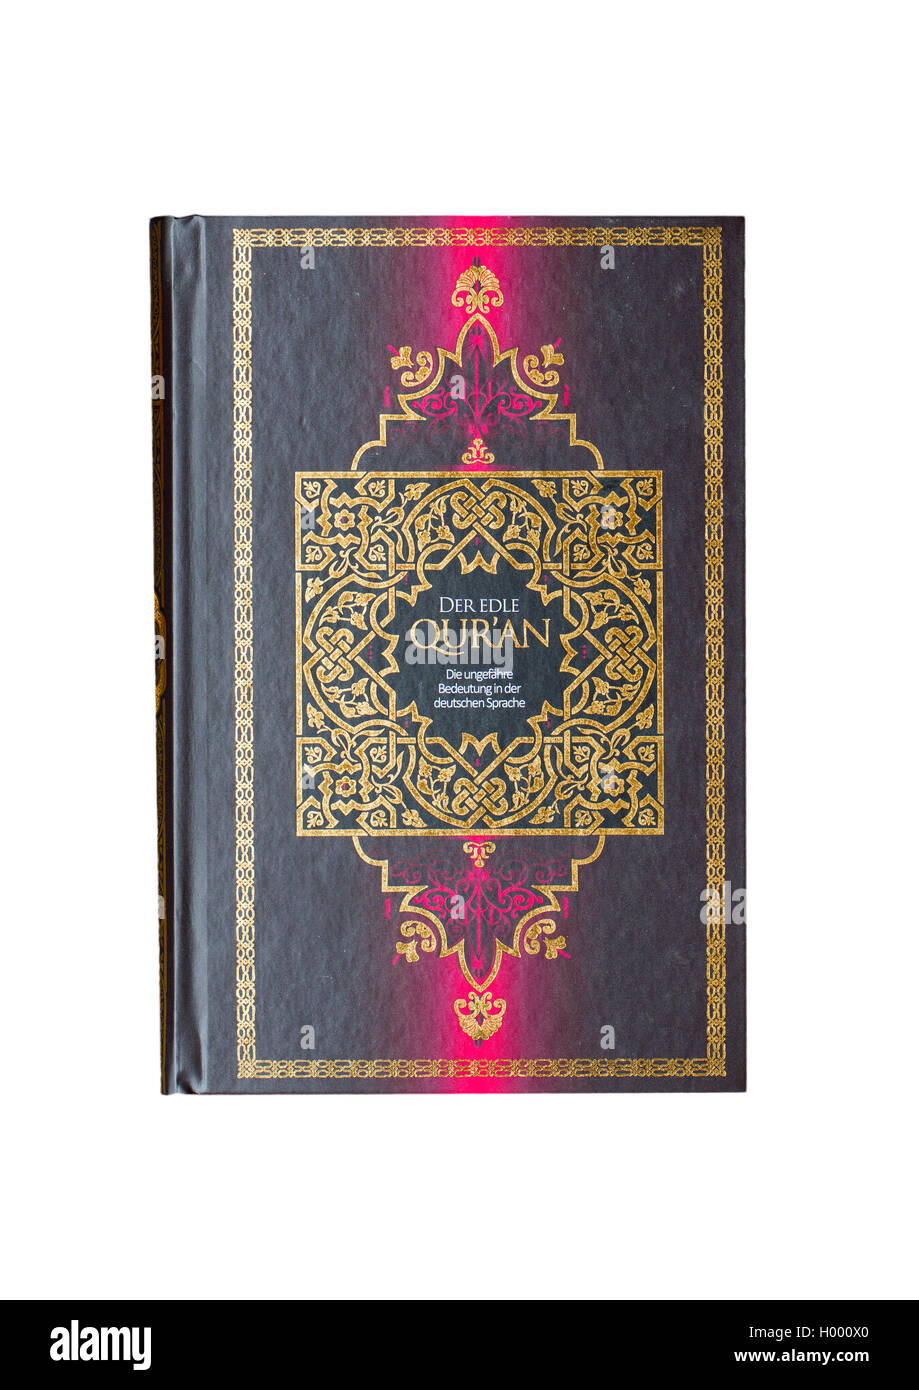 Livre Coran, le Noble Coran, le Coran, livre saint de l'Islam, édition allemande Banque D'Images